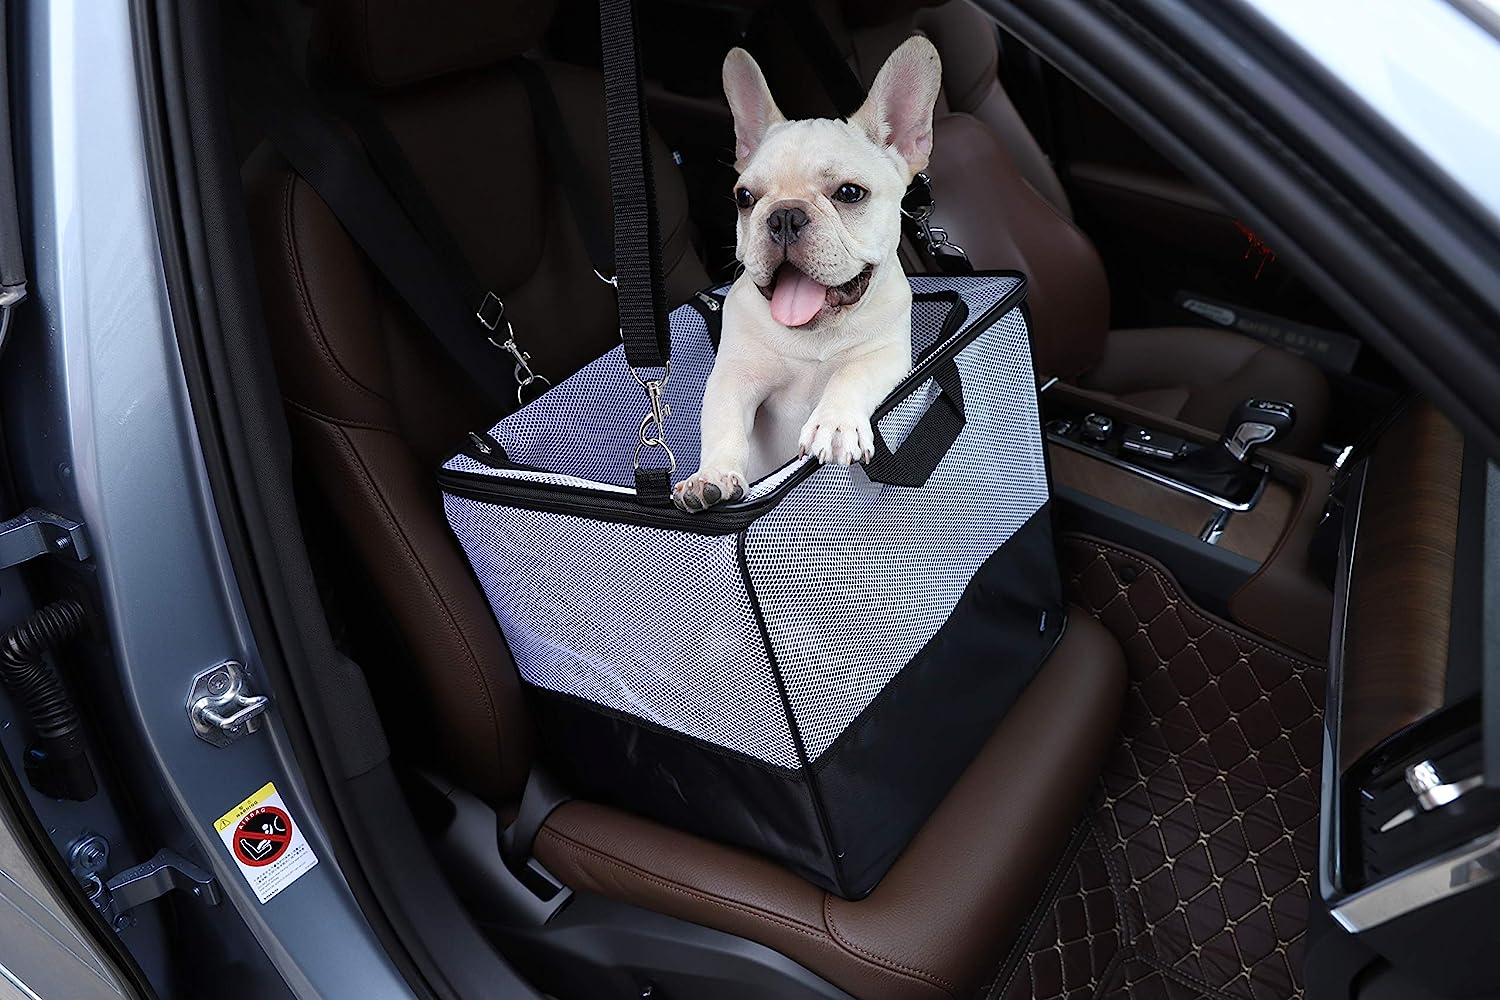 ★Amazonベーシック ペット用キャリーケース カーシート対応 柔らかい 車内に配置可能 耐久性 収納 洗濯機不可 40×35×37cm 小型犬や猫用に設計された柔らかい側面のあるキャリア/カーシート。 既存のシートベルトストラップで車内に配置可能。 外を見たり、新鮮な空気を循環させるためのメッシュ製の側面。 耐久性のある閉じれるジッパー、コンパクトに収納できるように平らに折りたたみ可能。 サイズ : 40×35×37cm。 スポットクリーニング可能、洗濯機不可。